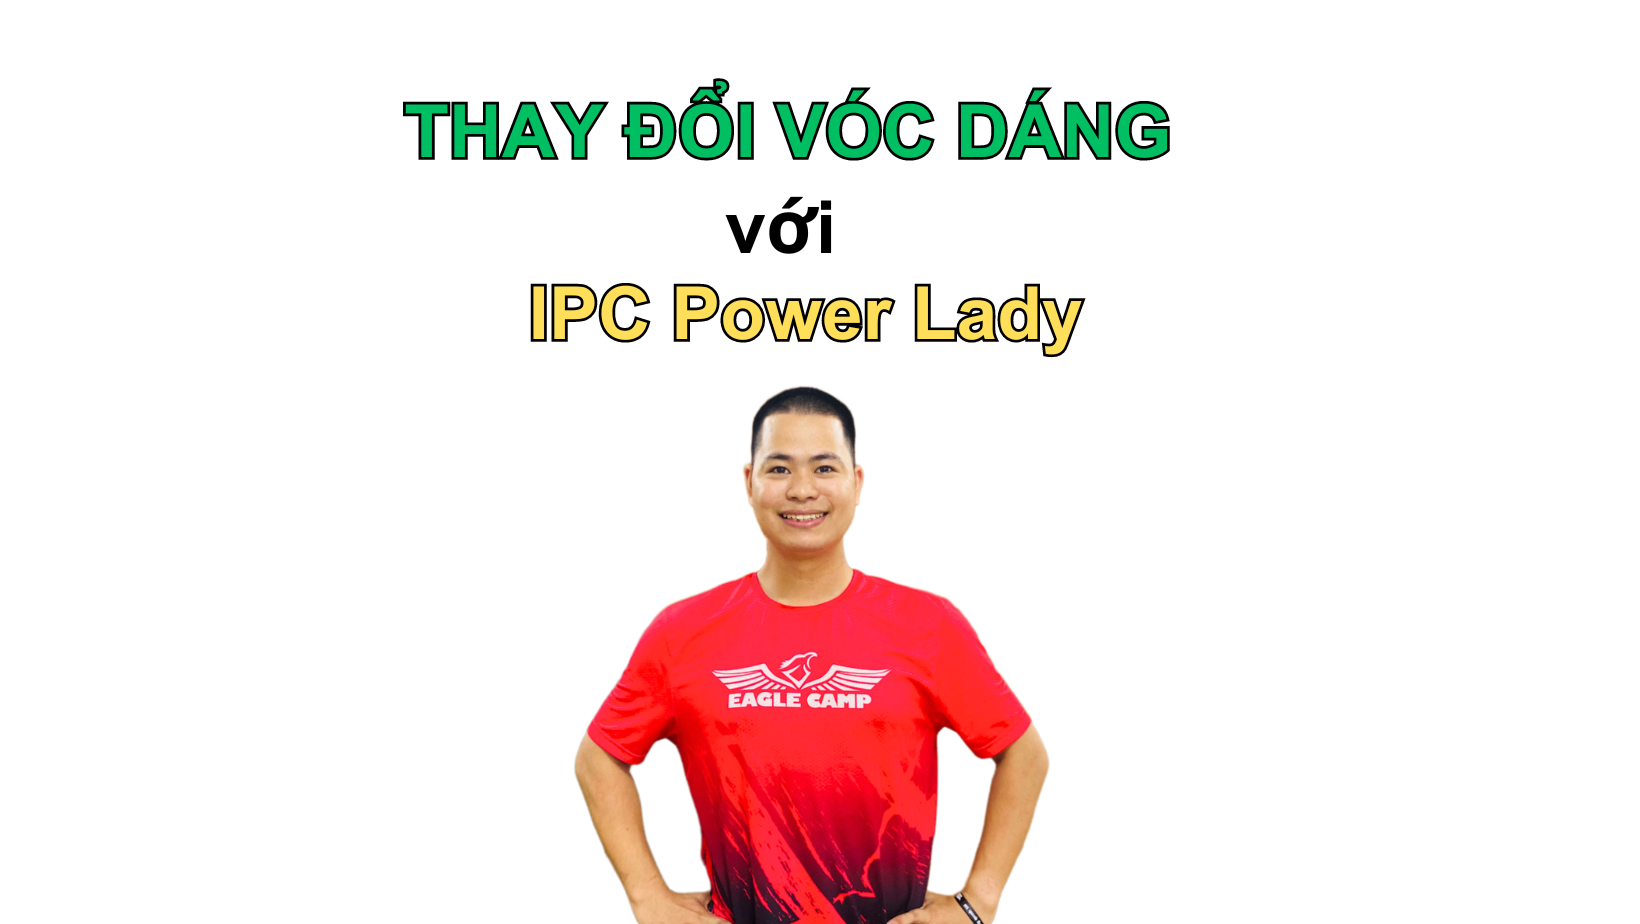 Tại sao phụ nữ bận rộn lại chọn IPC Power Lady để giảm cân và thay đổi vóc dáng